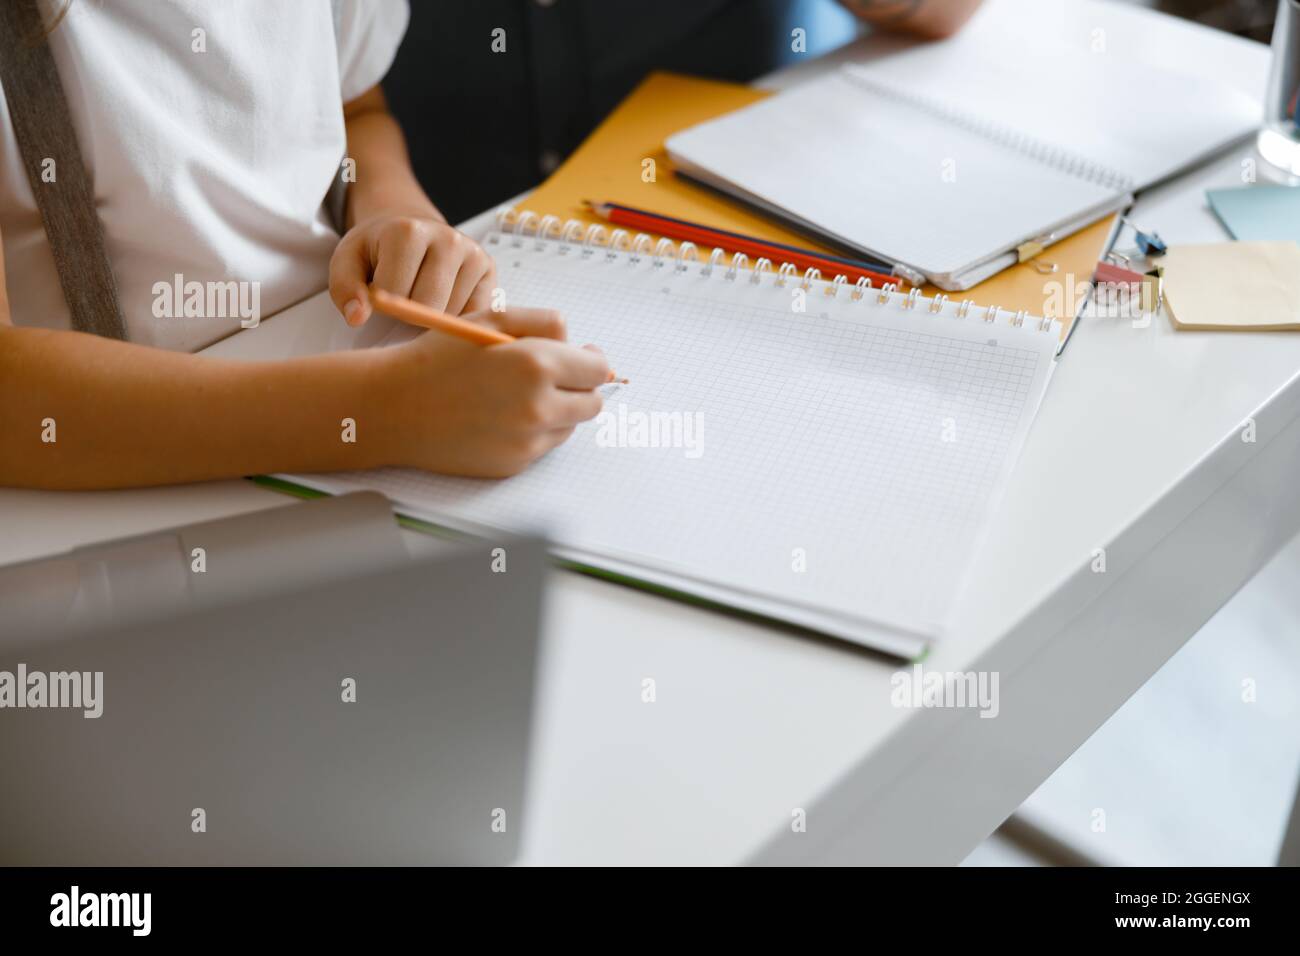 La ragazza piccola disegna in copybook con la matita gialla che fa i compiti al tavolo nella stanza Foto Stock